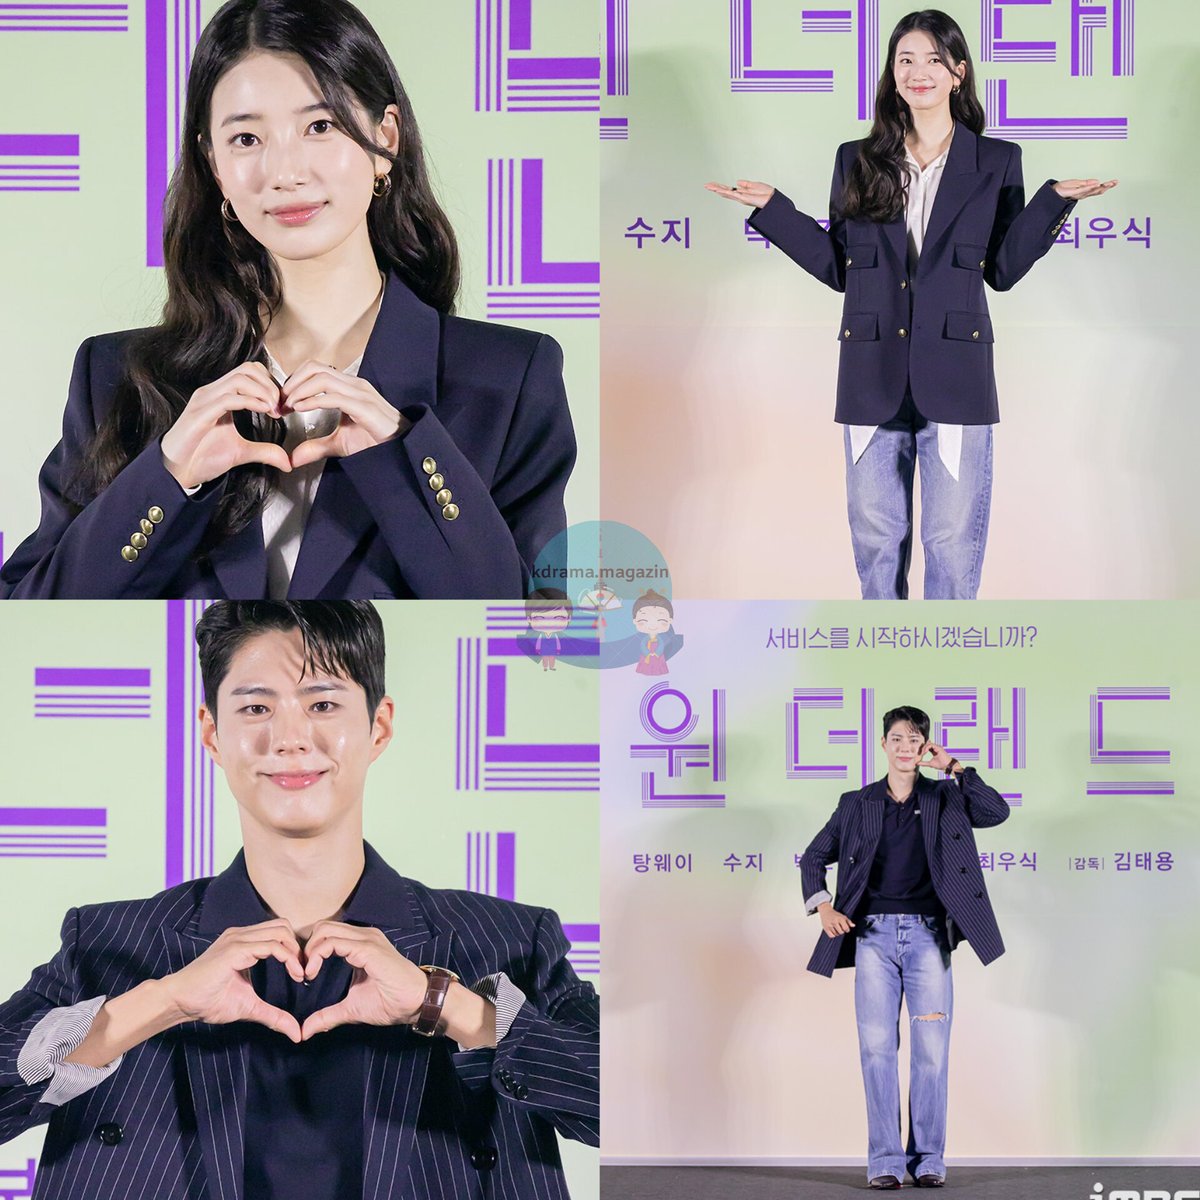 #Wonderland Filmi İçin Basın Toplantısı Düzenlendi.

🗓5 Haziran'da sinemalarda gösterime gireceği onaylandı. 

#Suzy #ParkBoGum #ChoiWooShik #JungYuMi #TangWei

👉 #kdramamagazinbasıntoplantıları